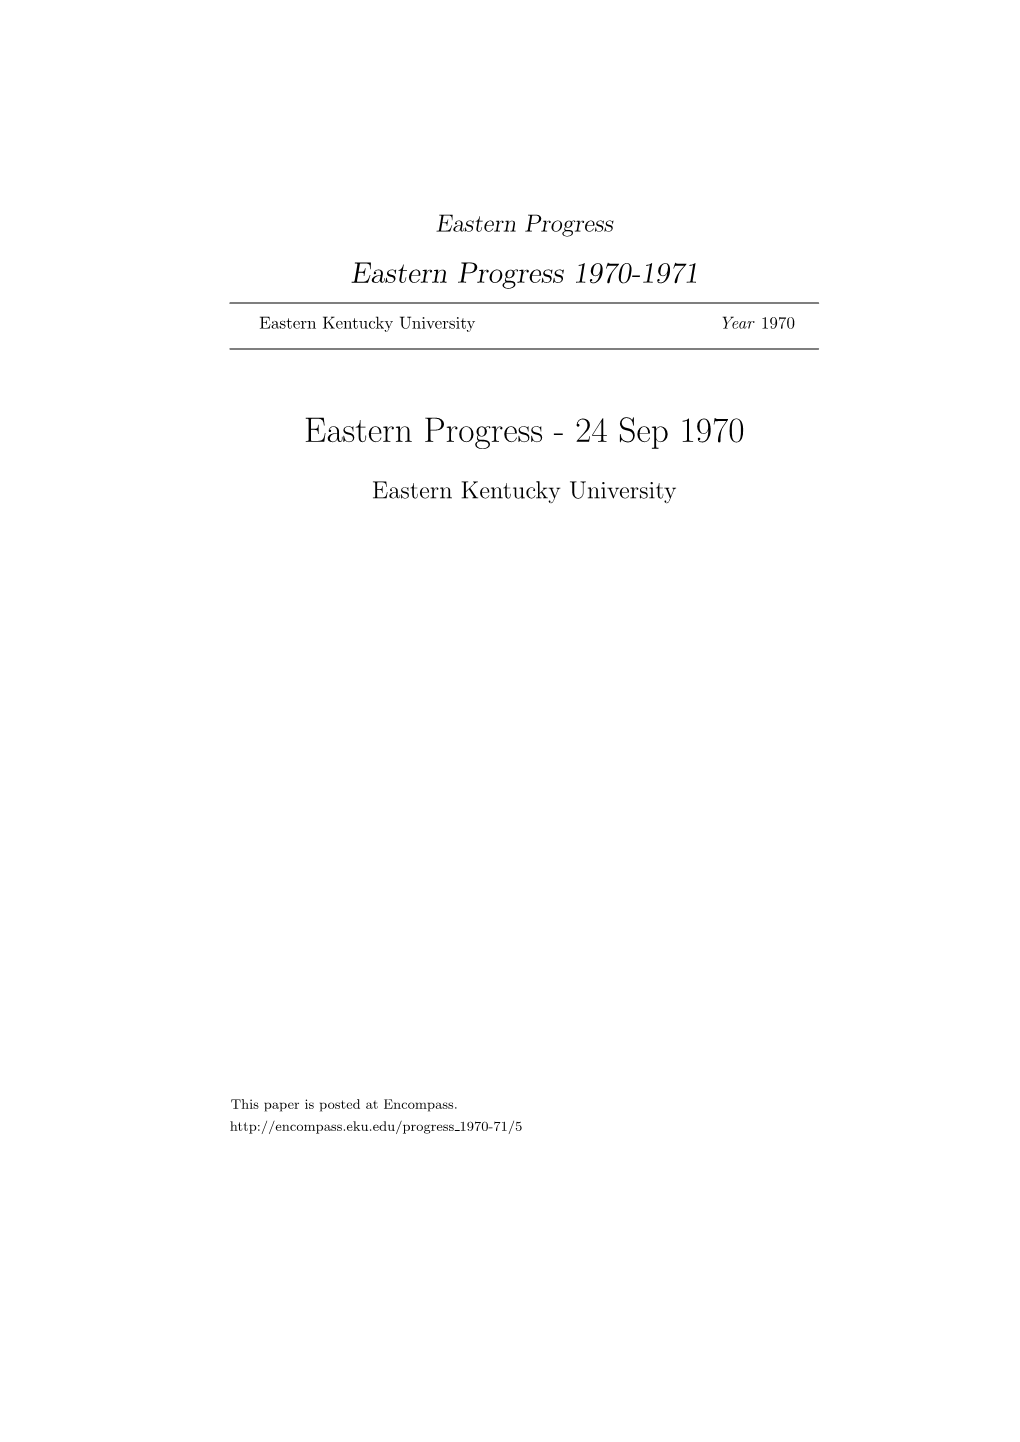 Eastern Progress Eastern Progress 1970-1971